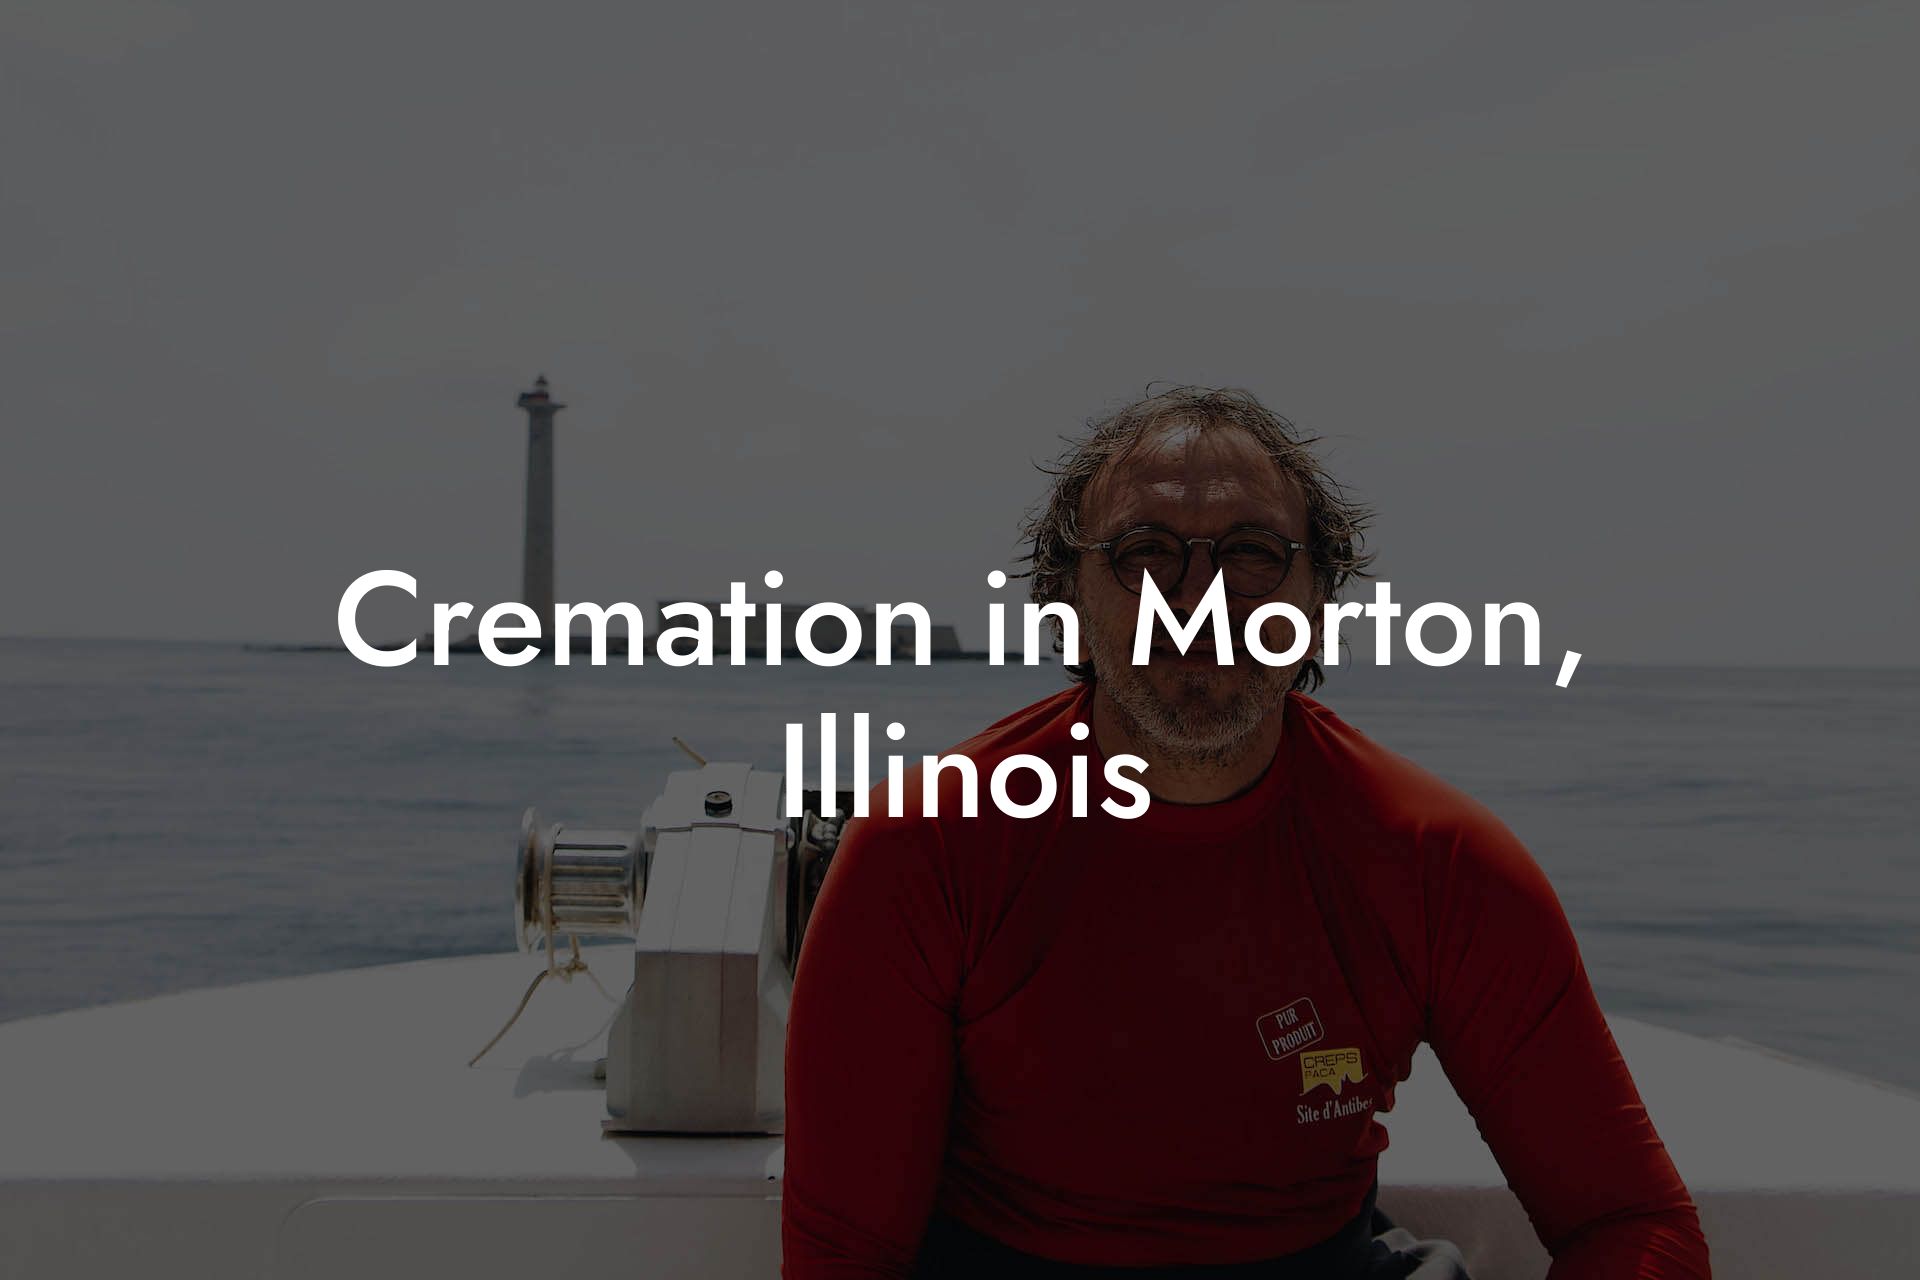 Cremation in Morton, Illinois